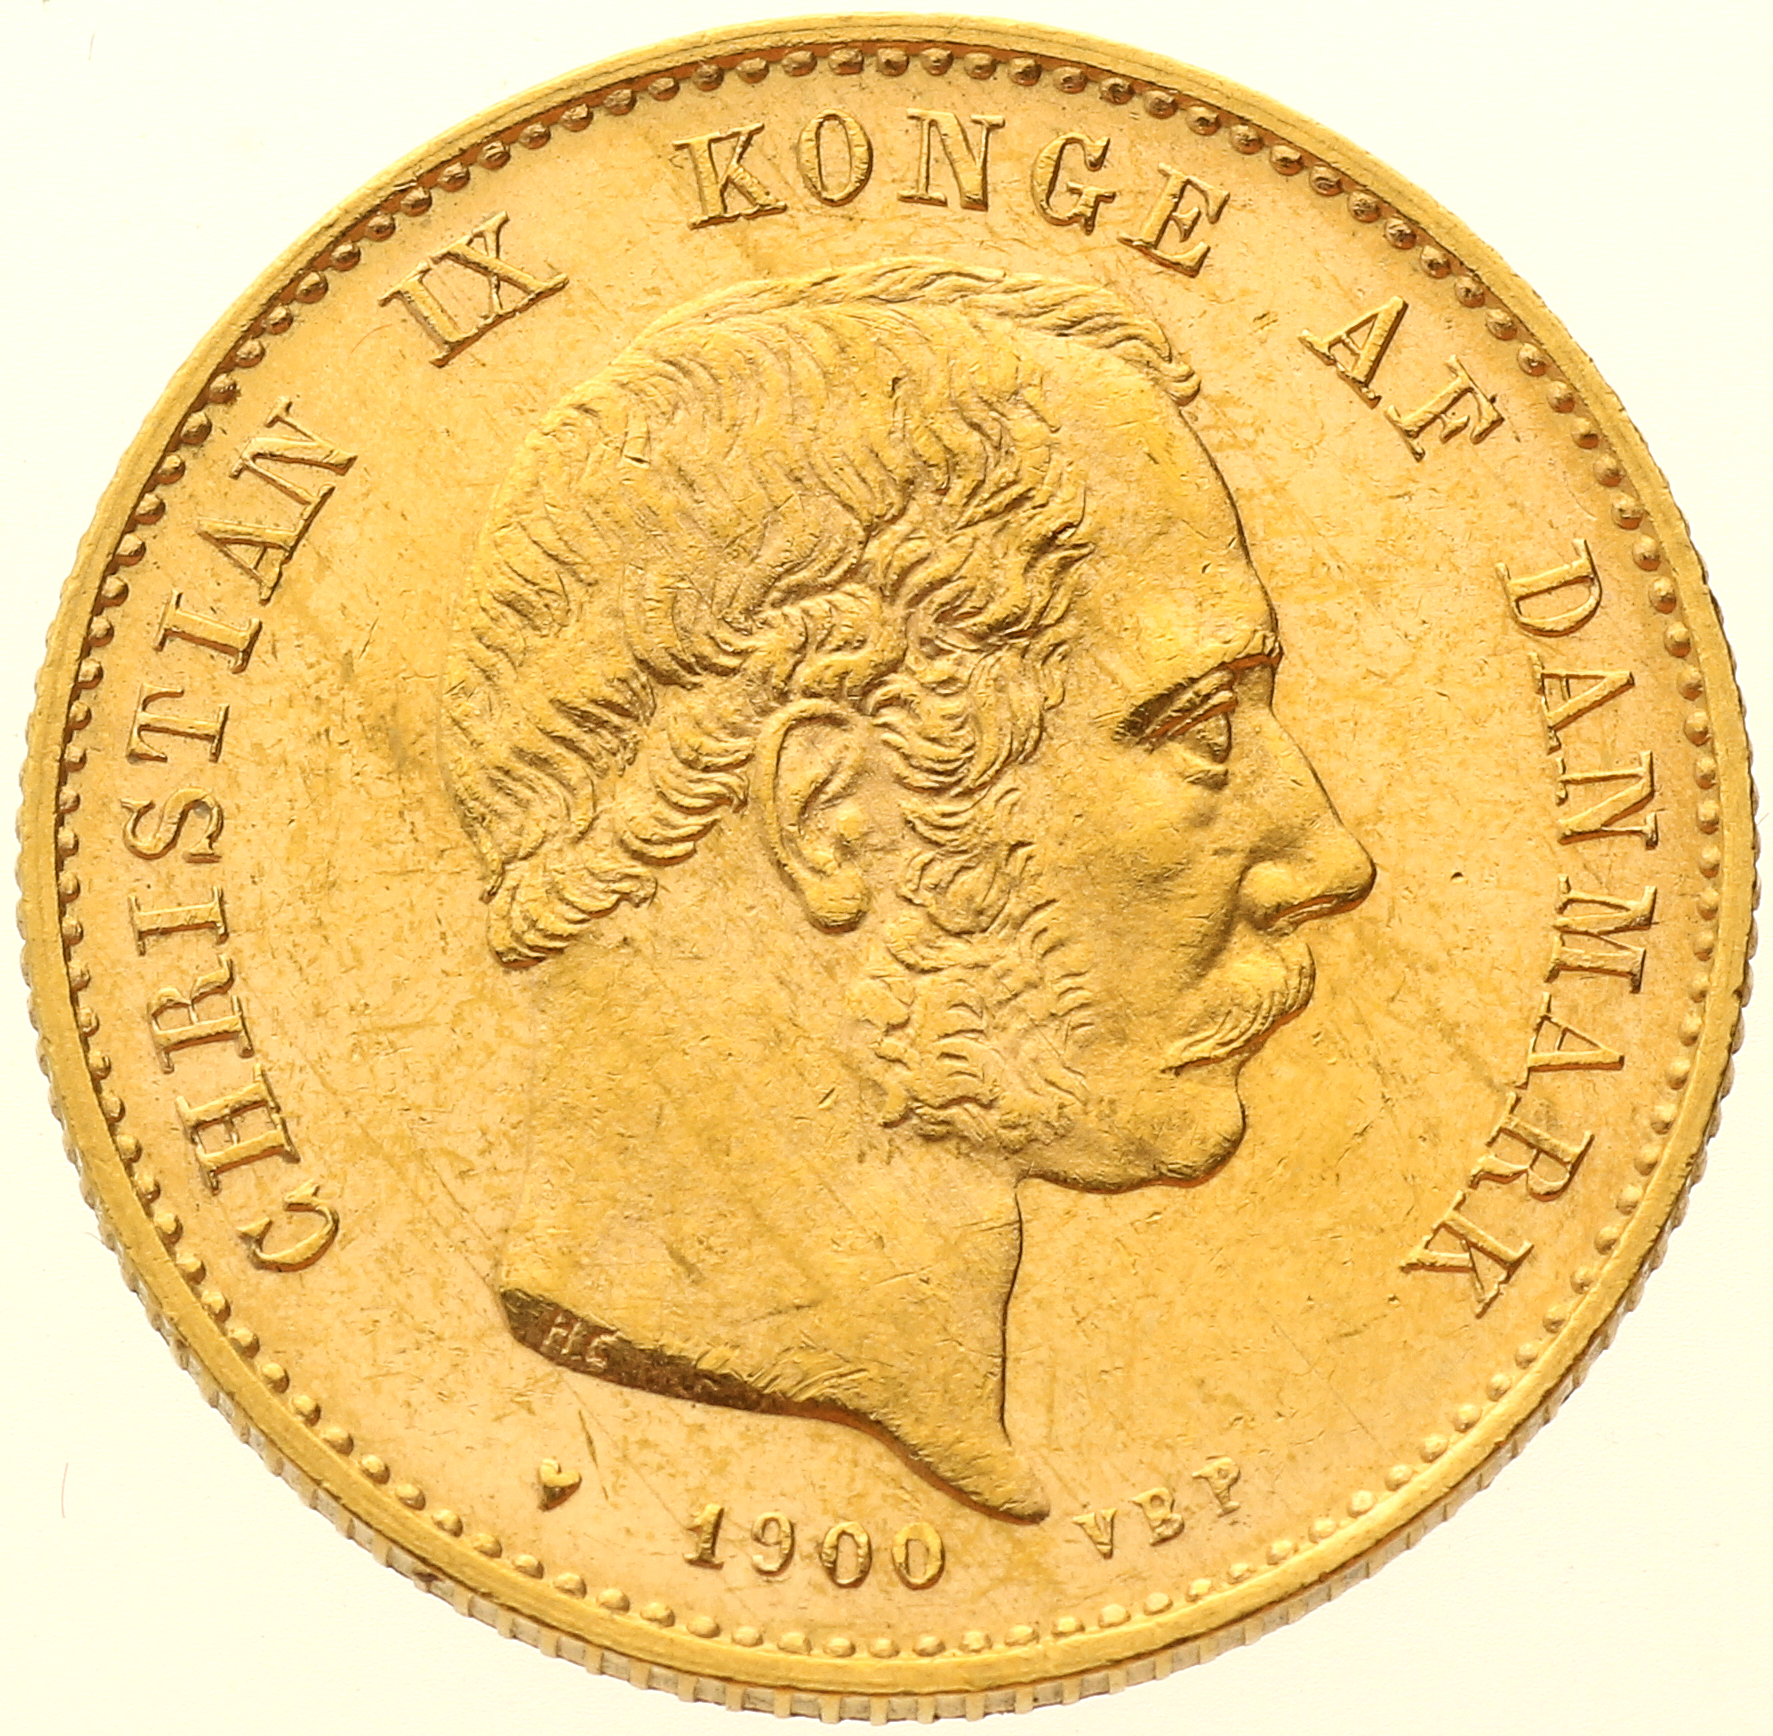 Denmark - 20 kroner - 1900 - Christian IX